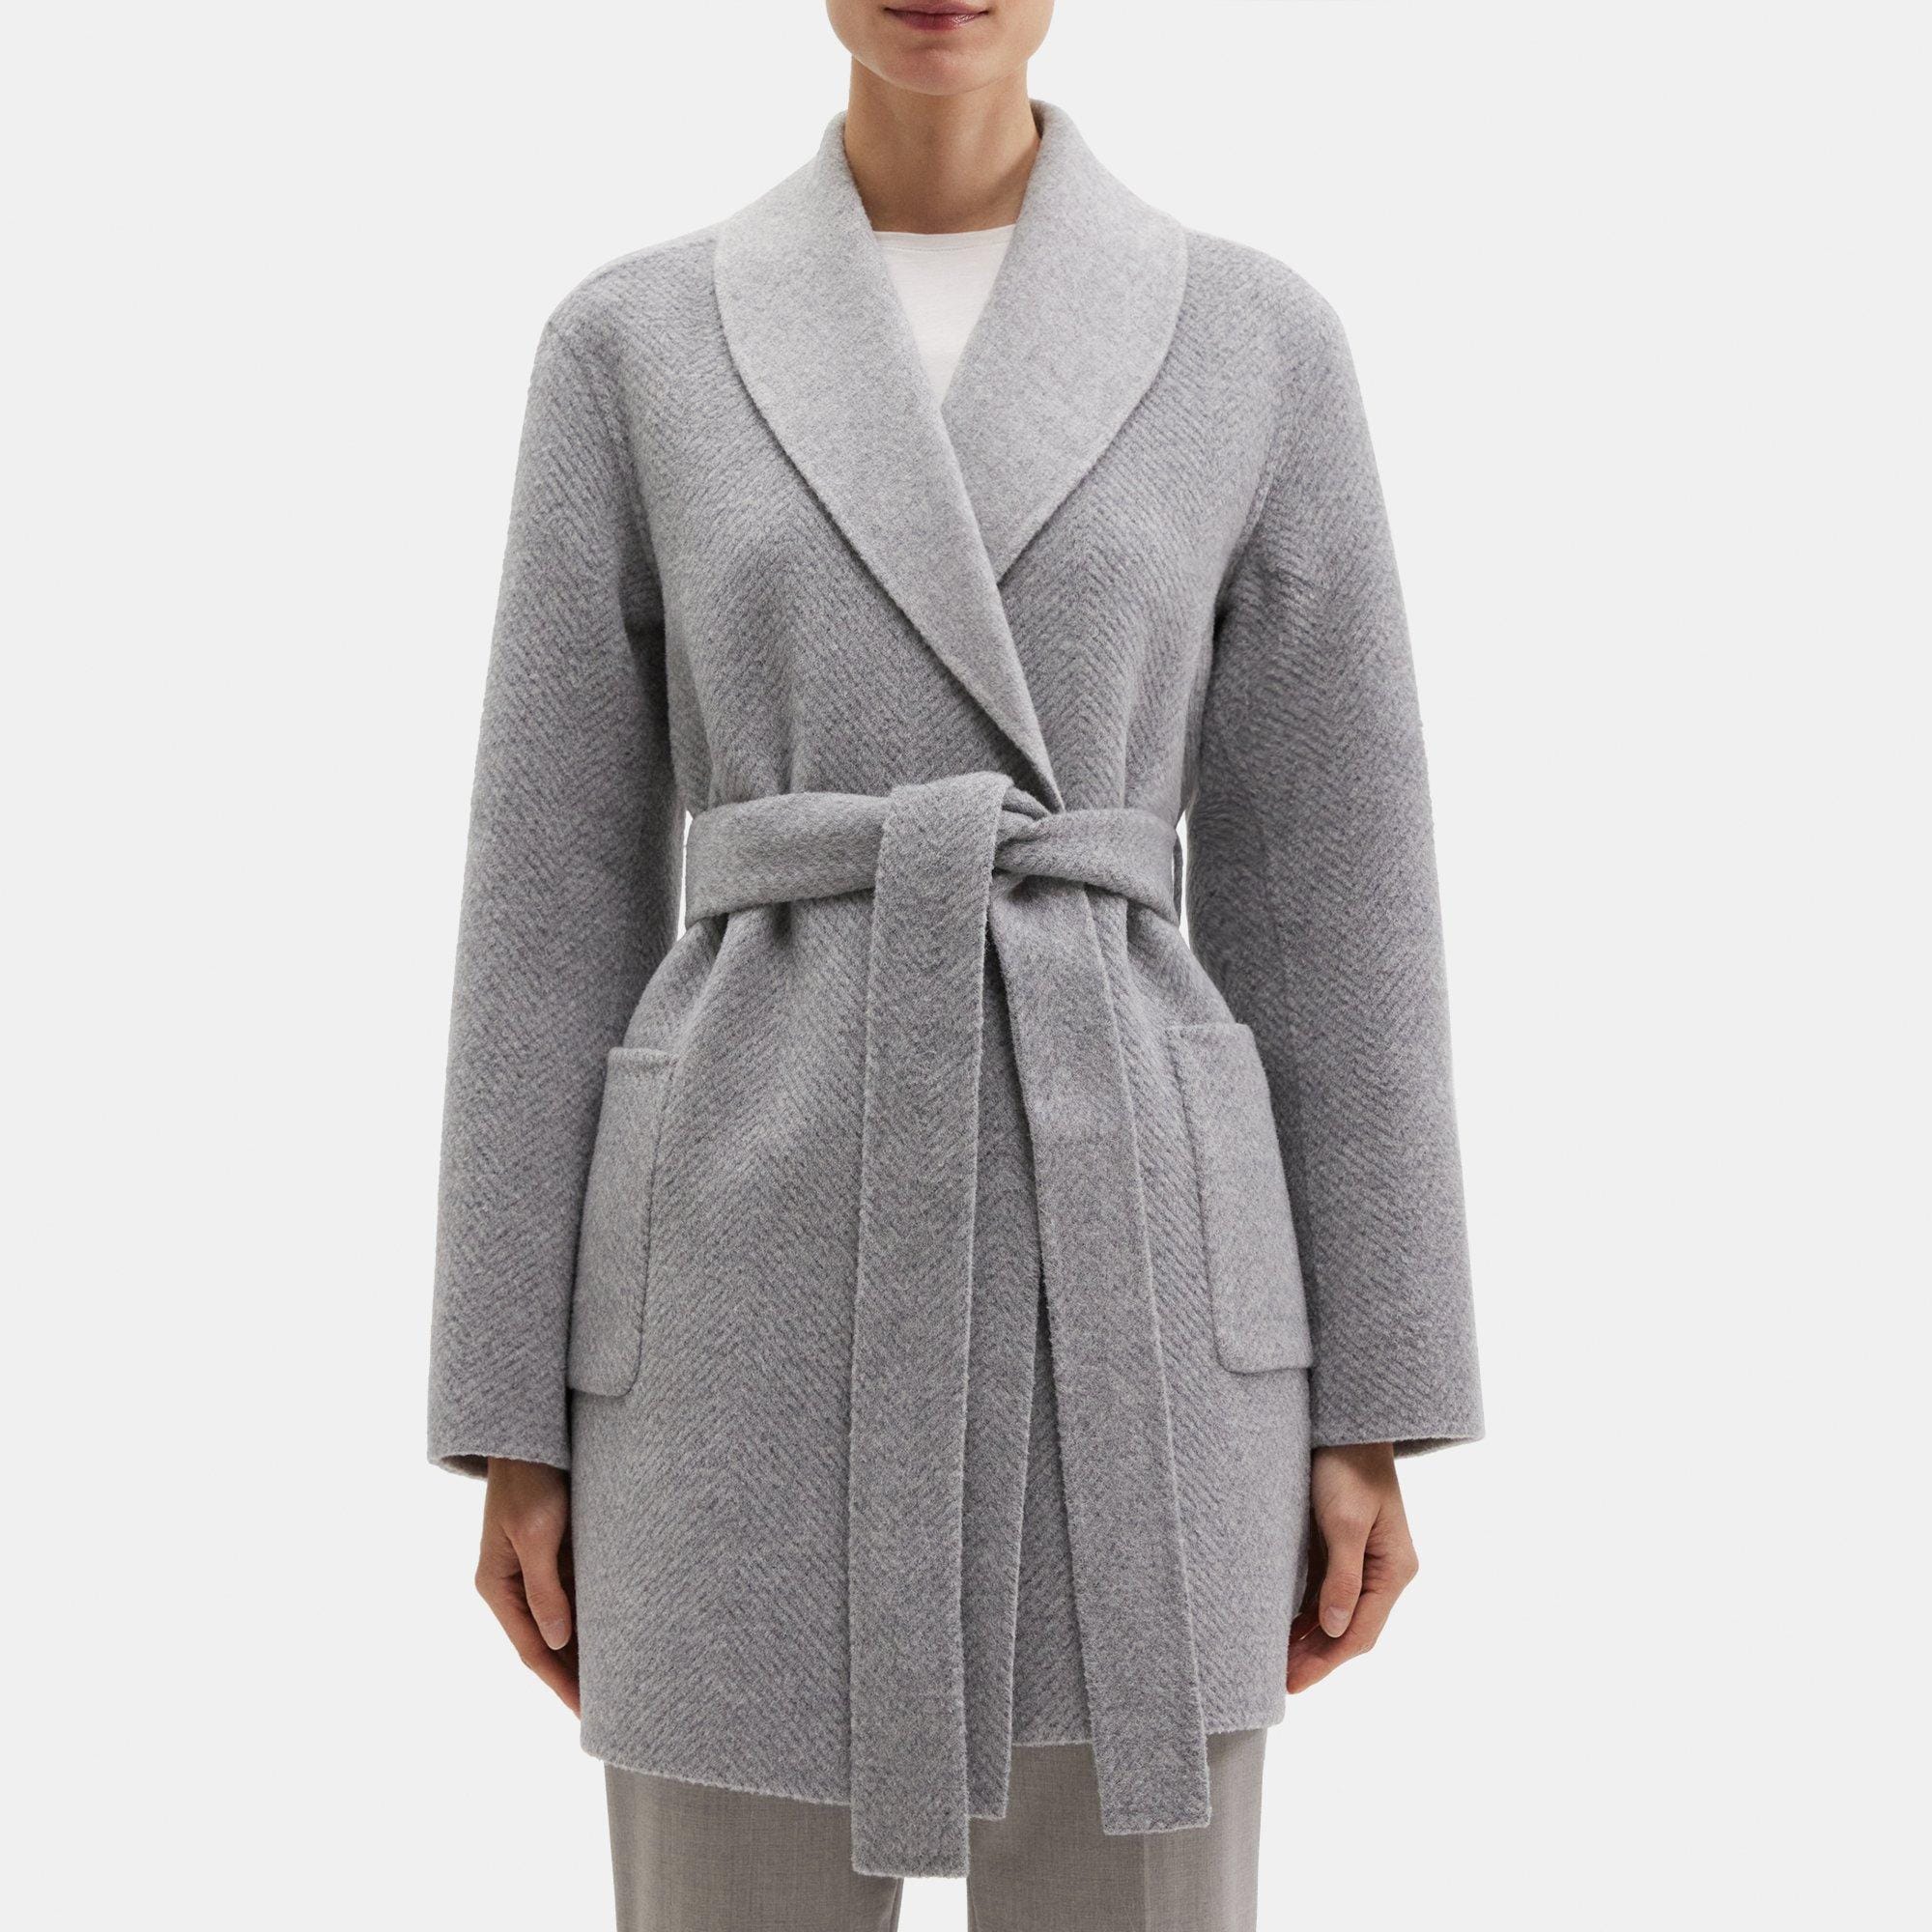 Wrap Coat in Double-Face Wool